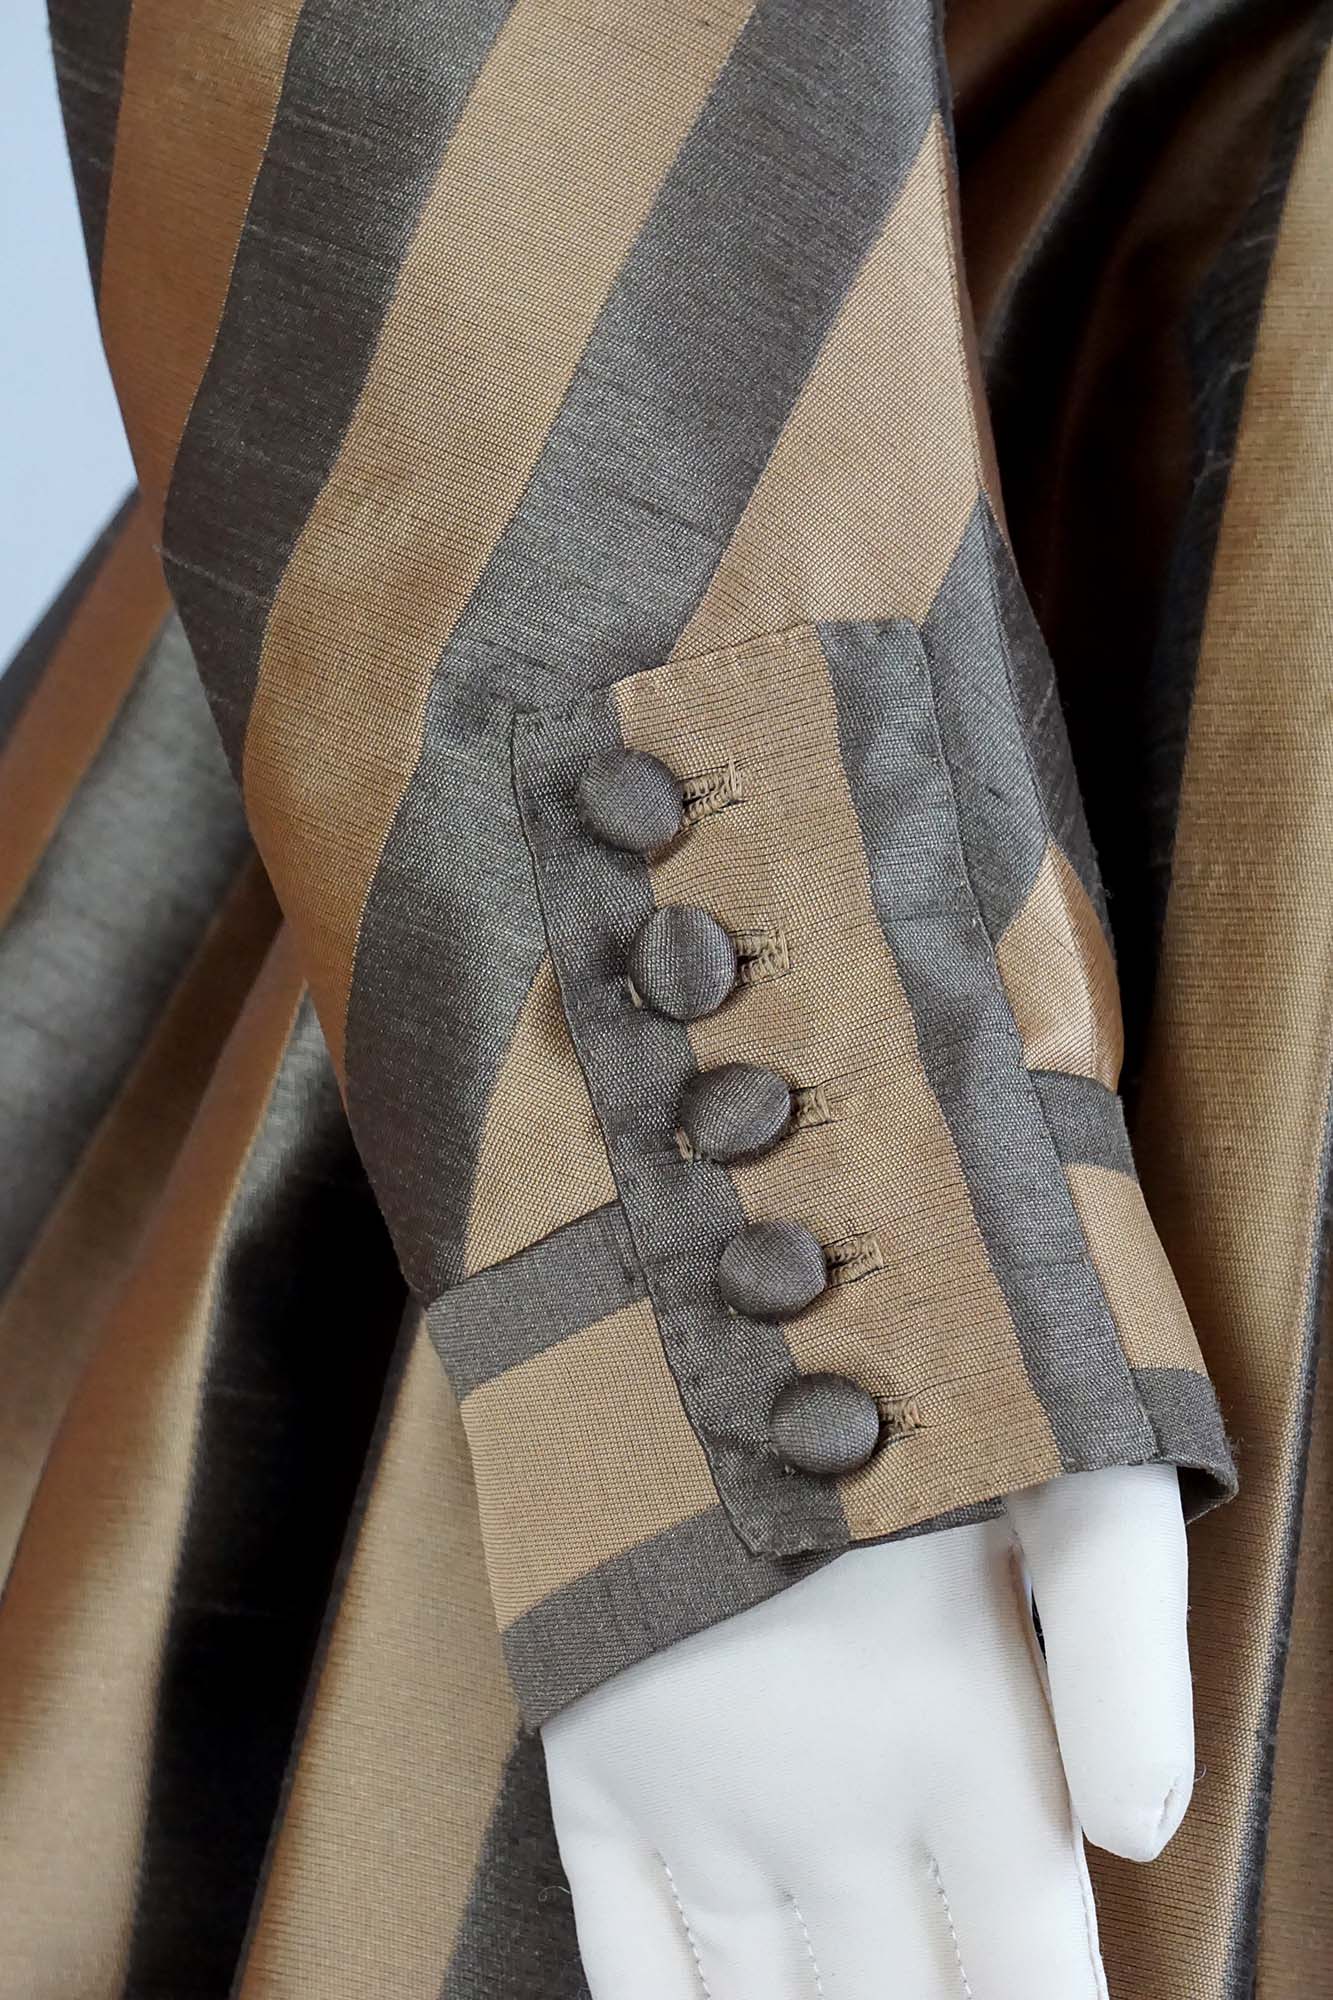 #0419 Rokoko Kleid Redingote um 1780 inkl. Po-Kissen, Taschen und Fichu Schnittmuster Größe EU 34-56 Papierschnittmuster